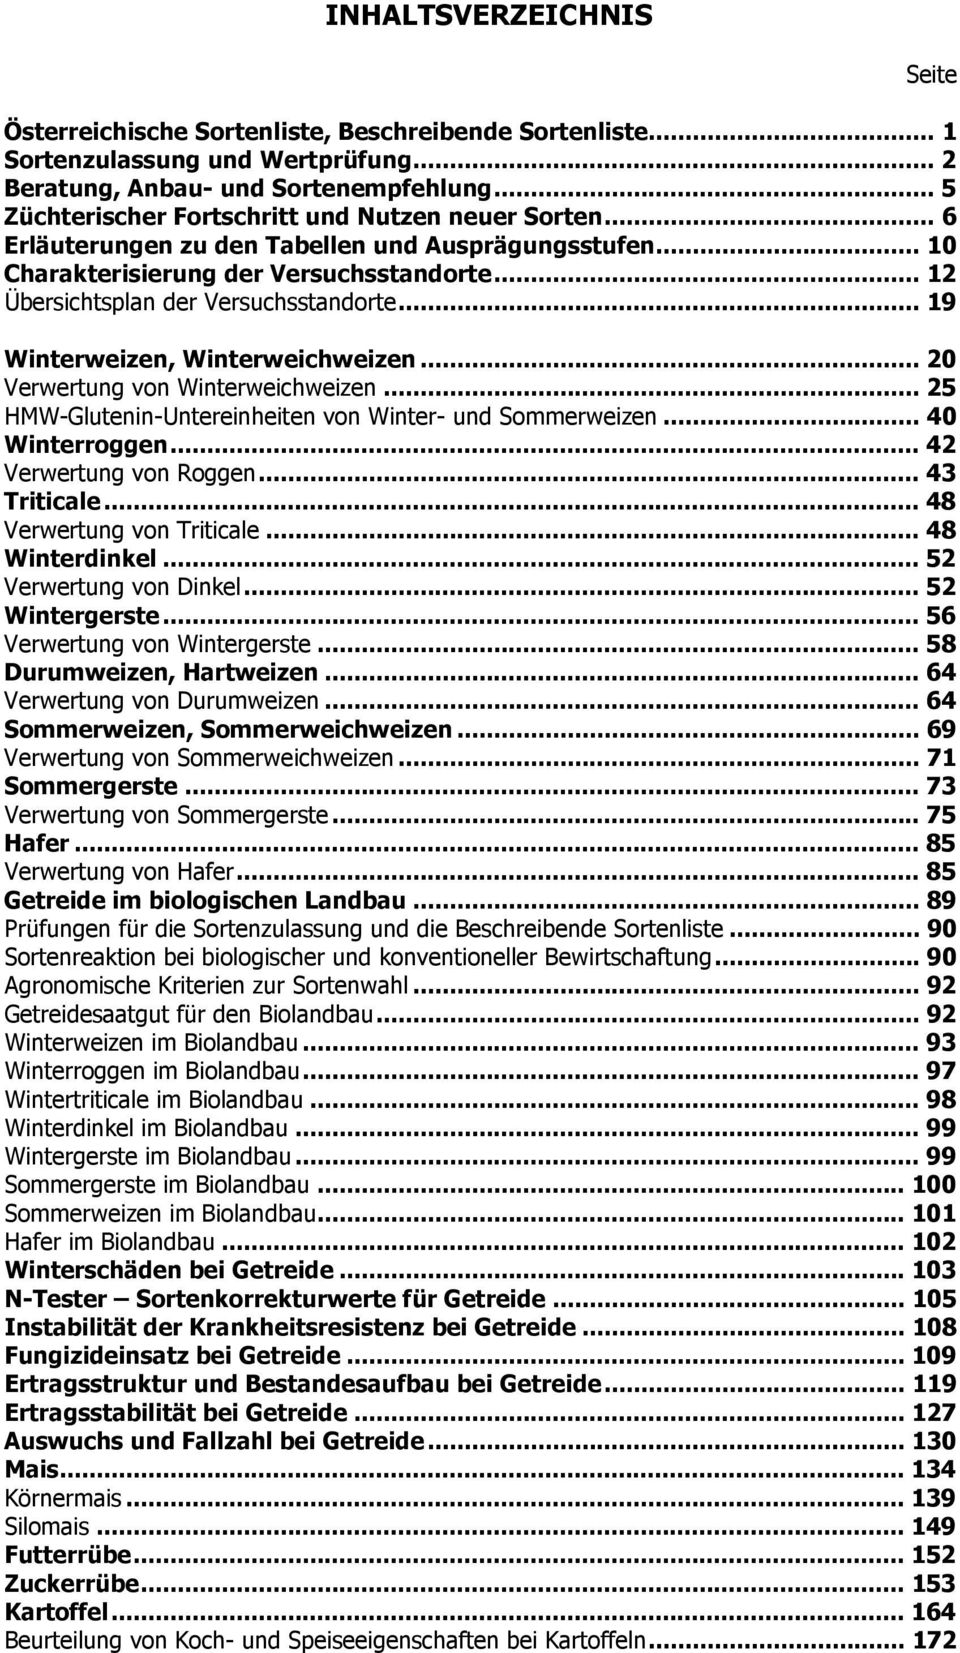 .. 19 Winterweizen, Winterweichweizen... 20 Verwertung von Winterweichweizen... 25 HMW-Glutenin-Untereinheiten von Winter- und Sommerweizen... 40 Winterroggen... 42 Verwertung von Roggen.